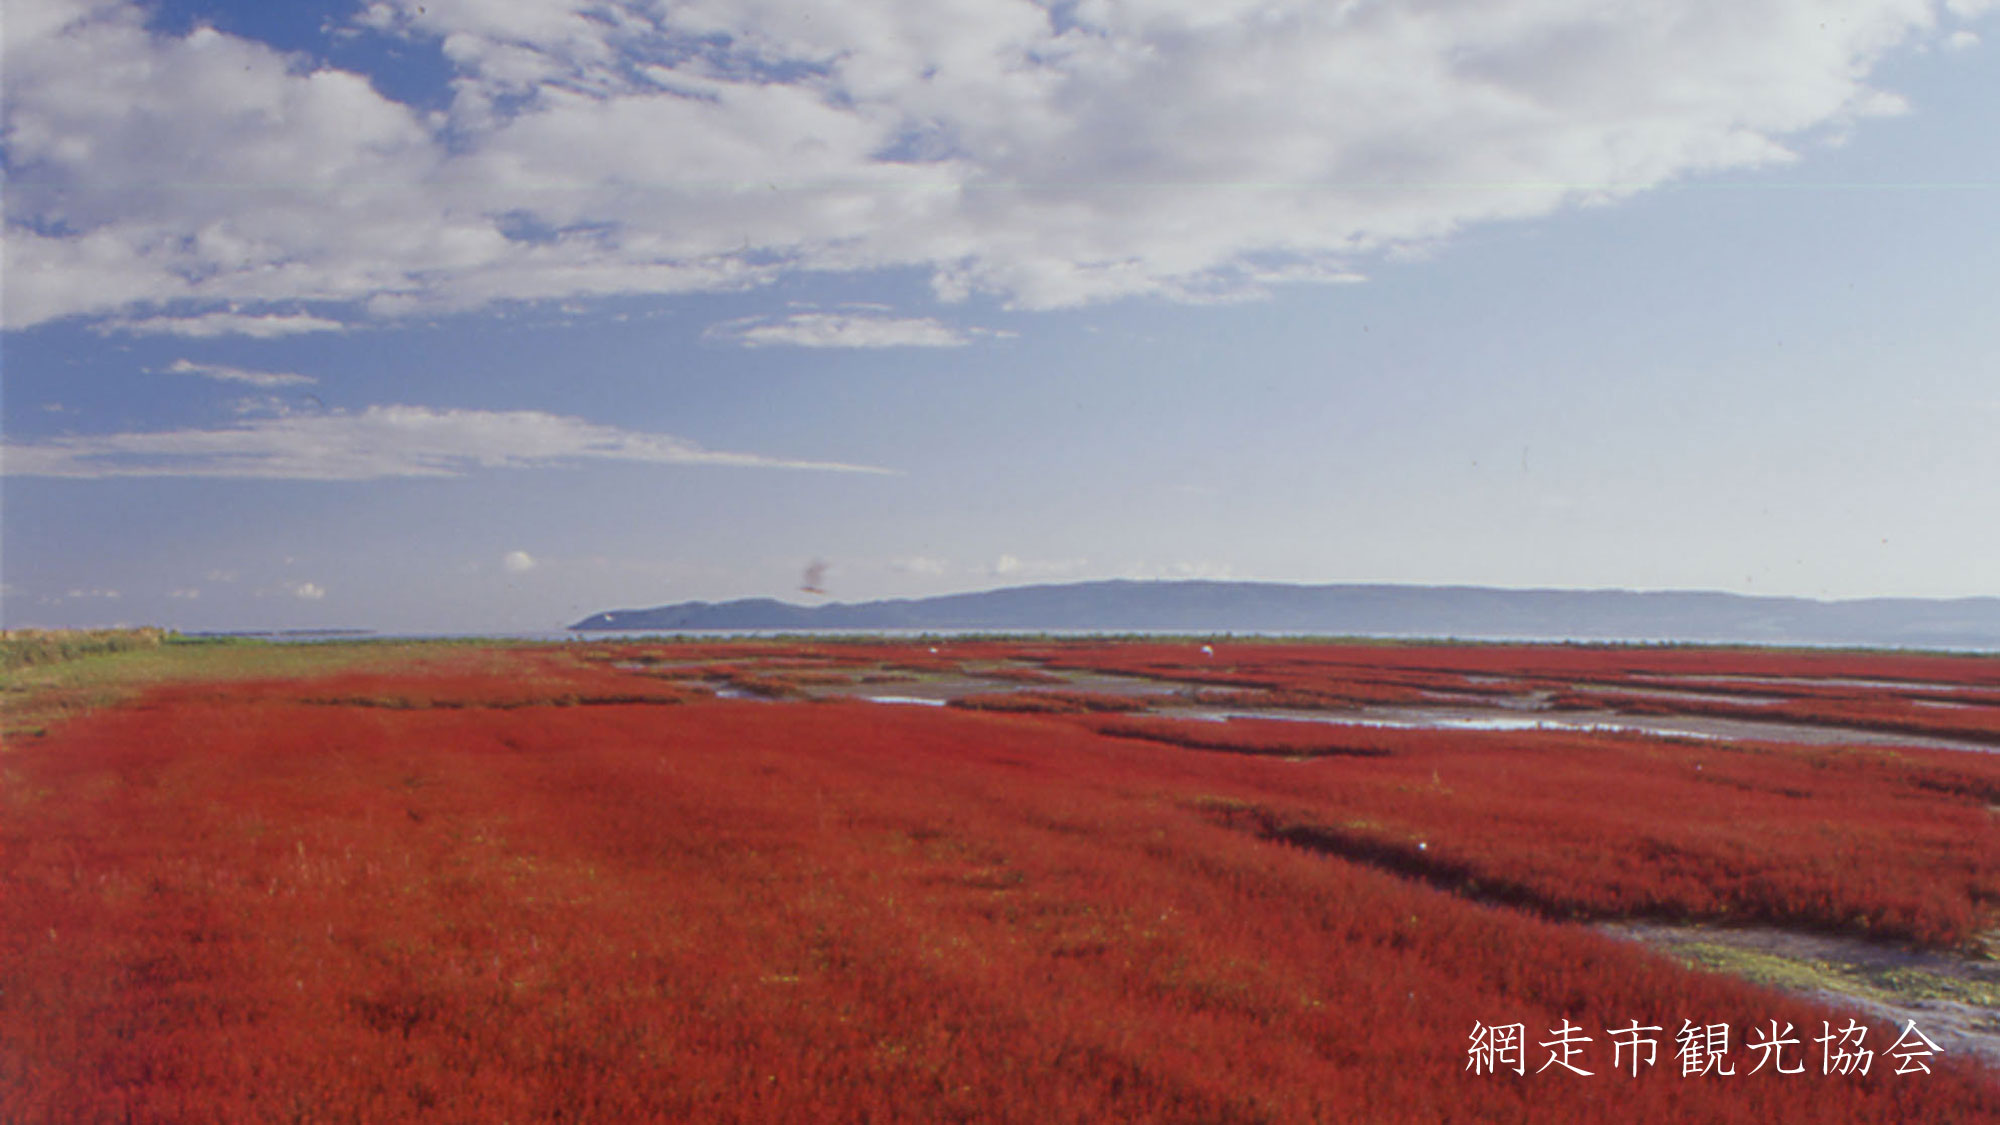 *［能取湖］当館より車で約17分。日本一の規模を誇るサンゴ草の群生地。例年見頃は9月中旬～下旬